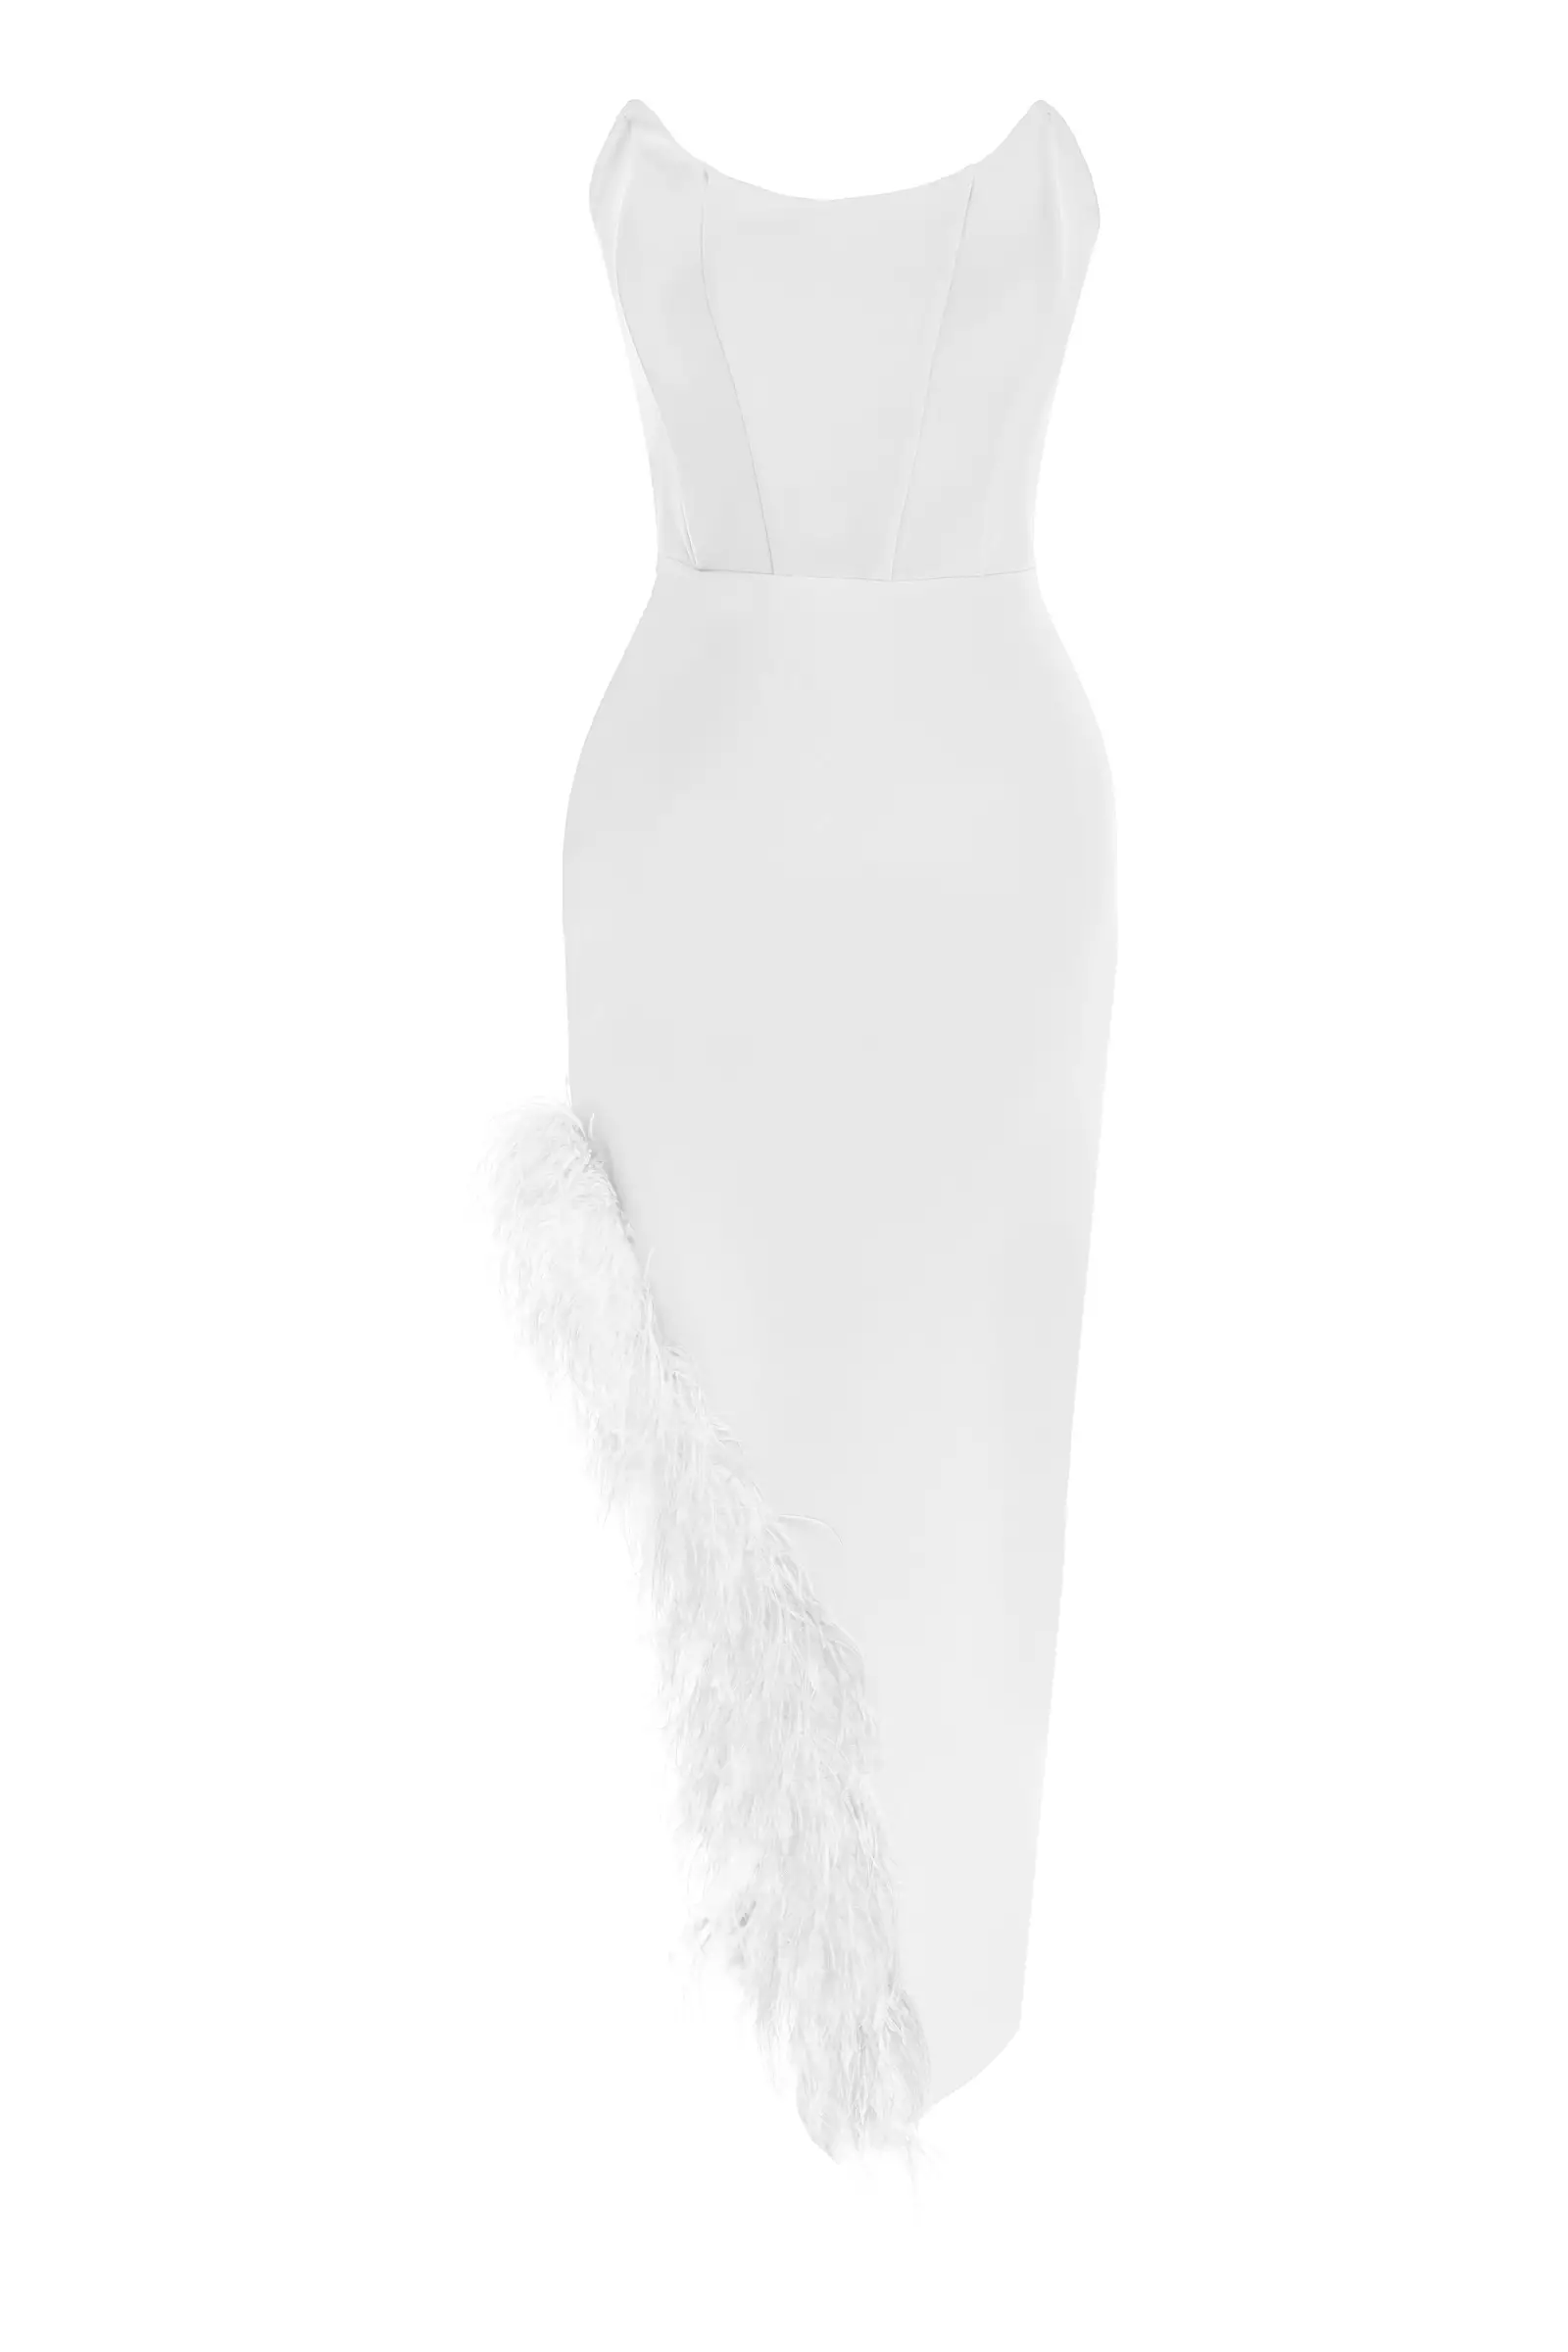 White crepe strapless long dress